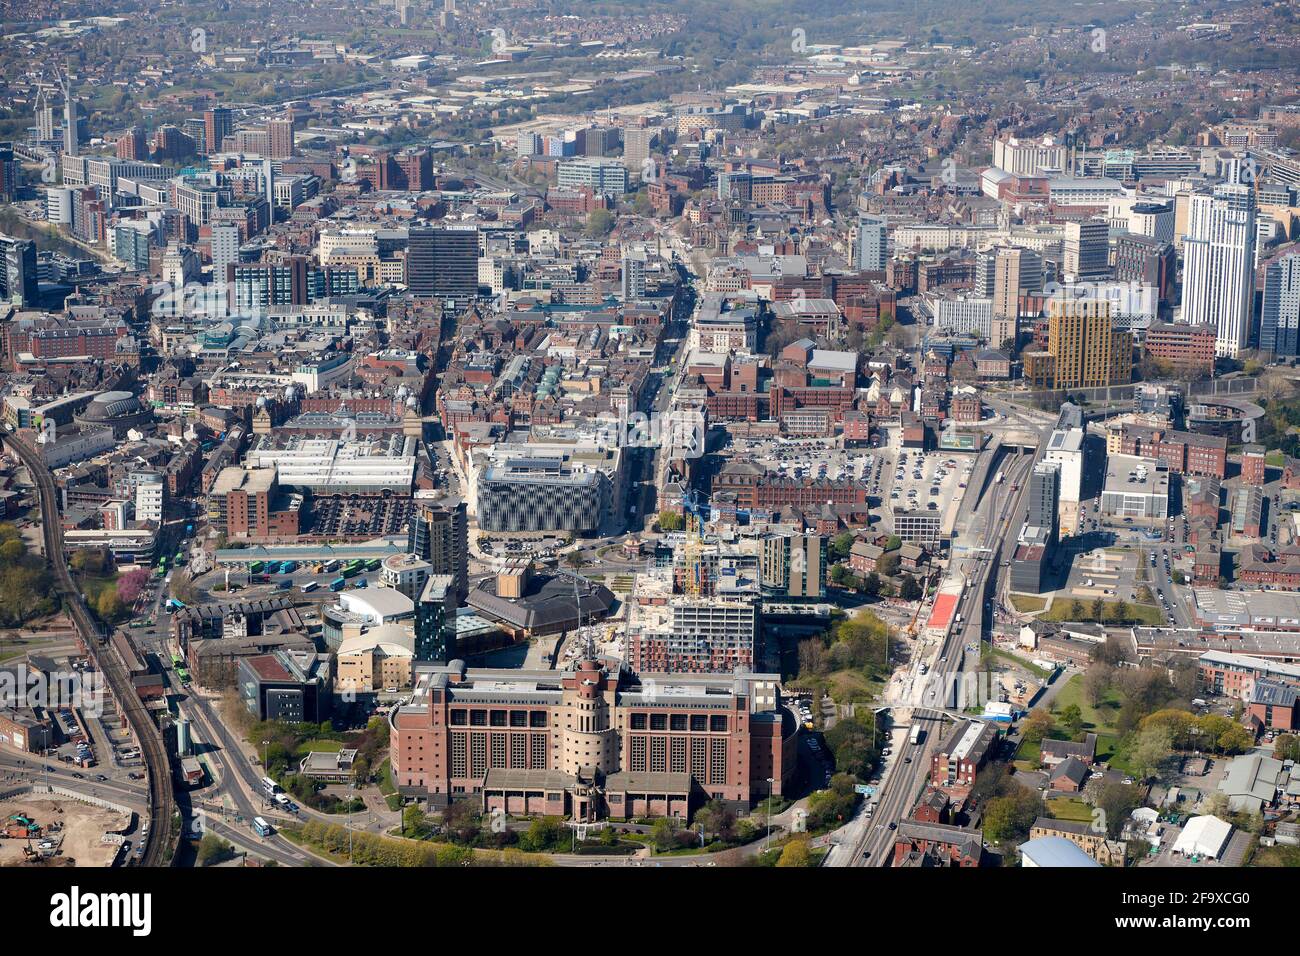 Vue aérienne du centre-ville de Leeds, West Yorkshire, nord de l'Angleterre, Royaume-Uni, prise de vue depuis l'est, bâtiment du DSS, Quarry House, en premier plan Banque D'Images